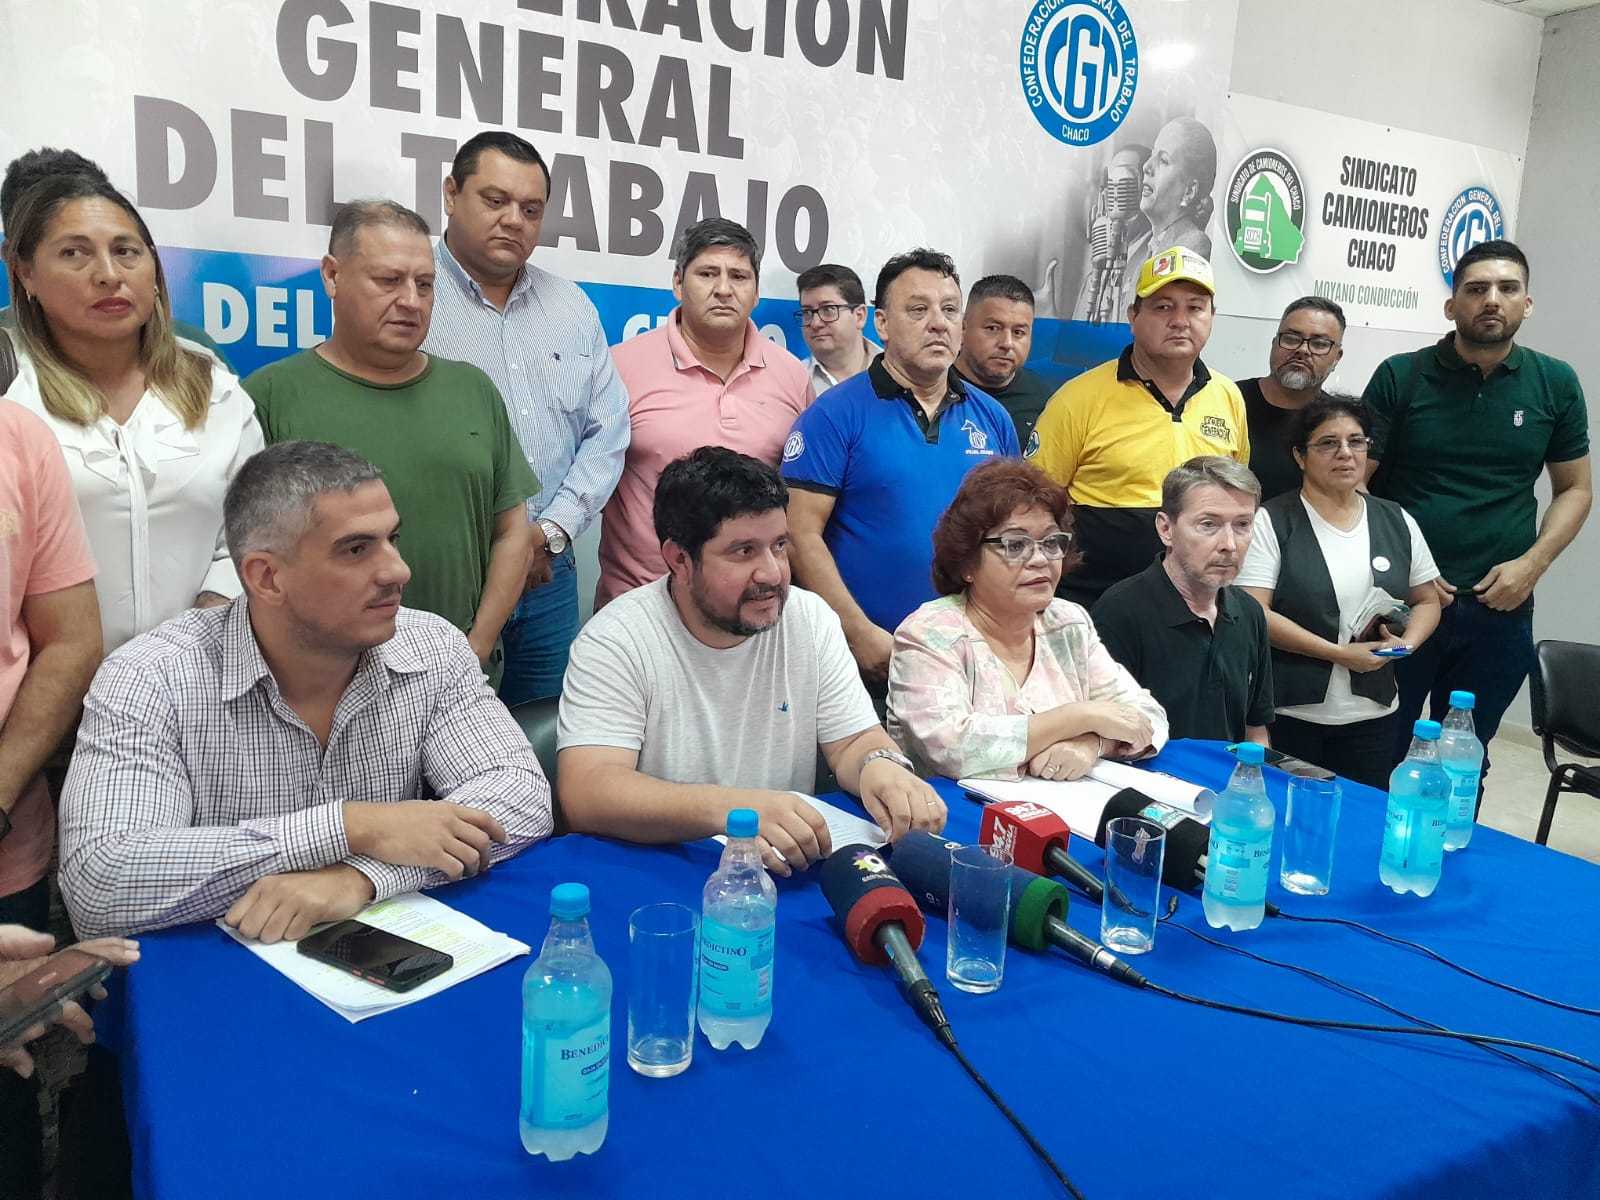 CGT Chaco en estado de alerta y movilización tras el decreto Milei: “Han tocado todos los derechos laborales fundamentales”